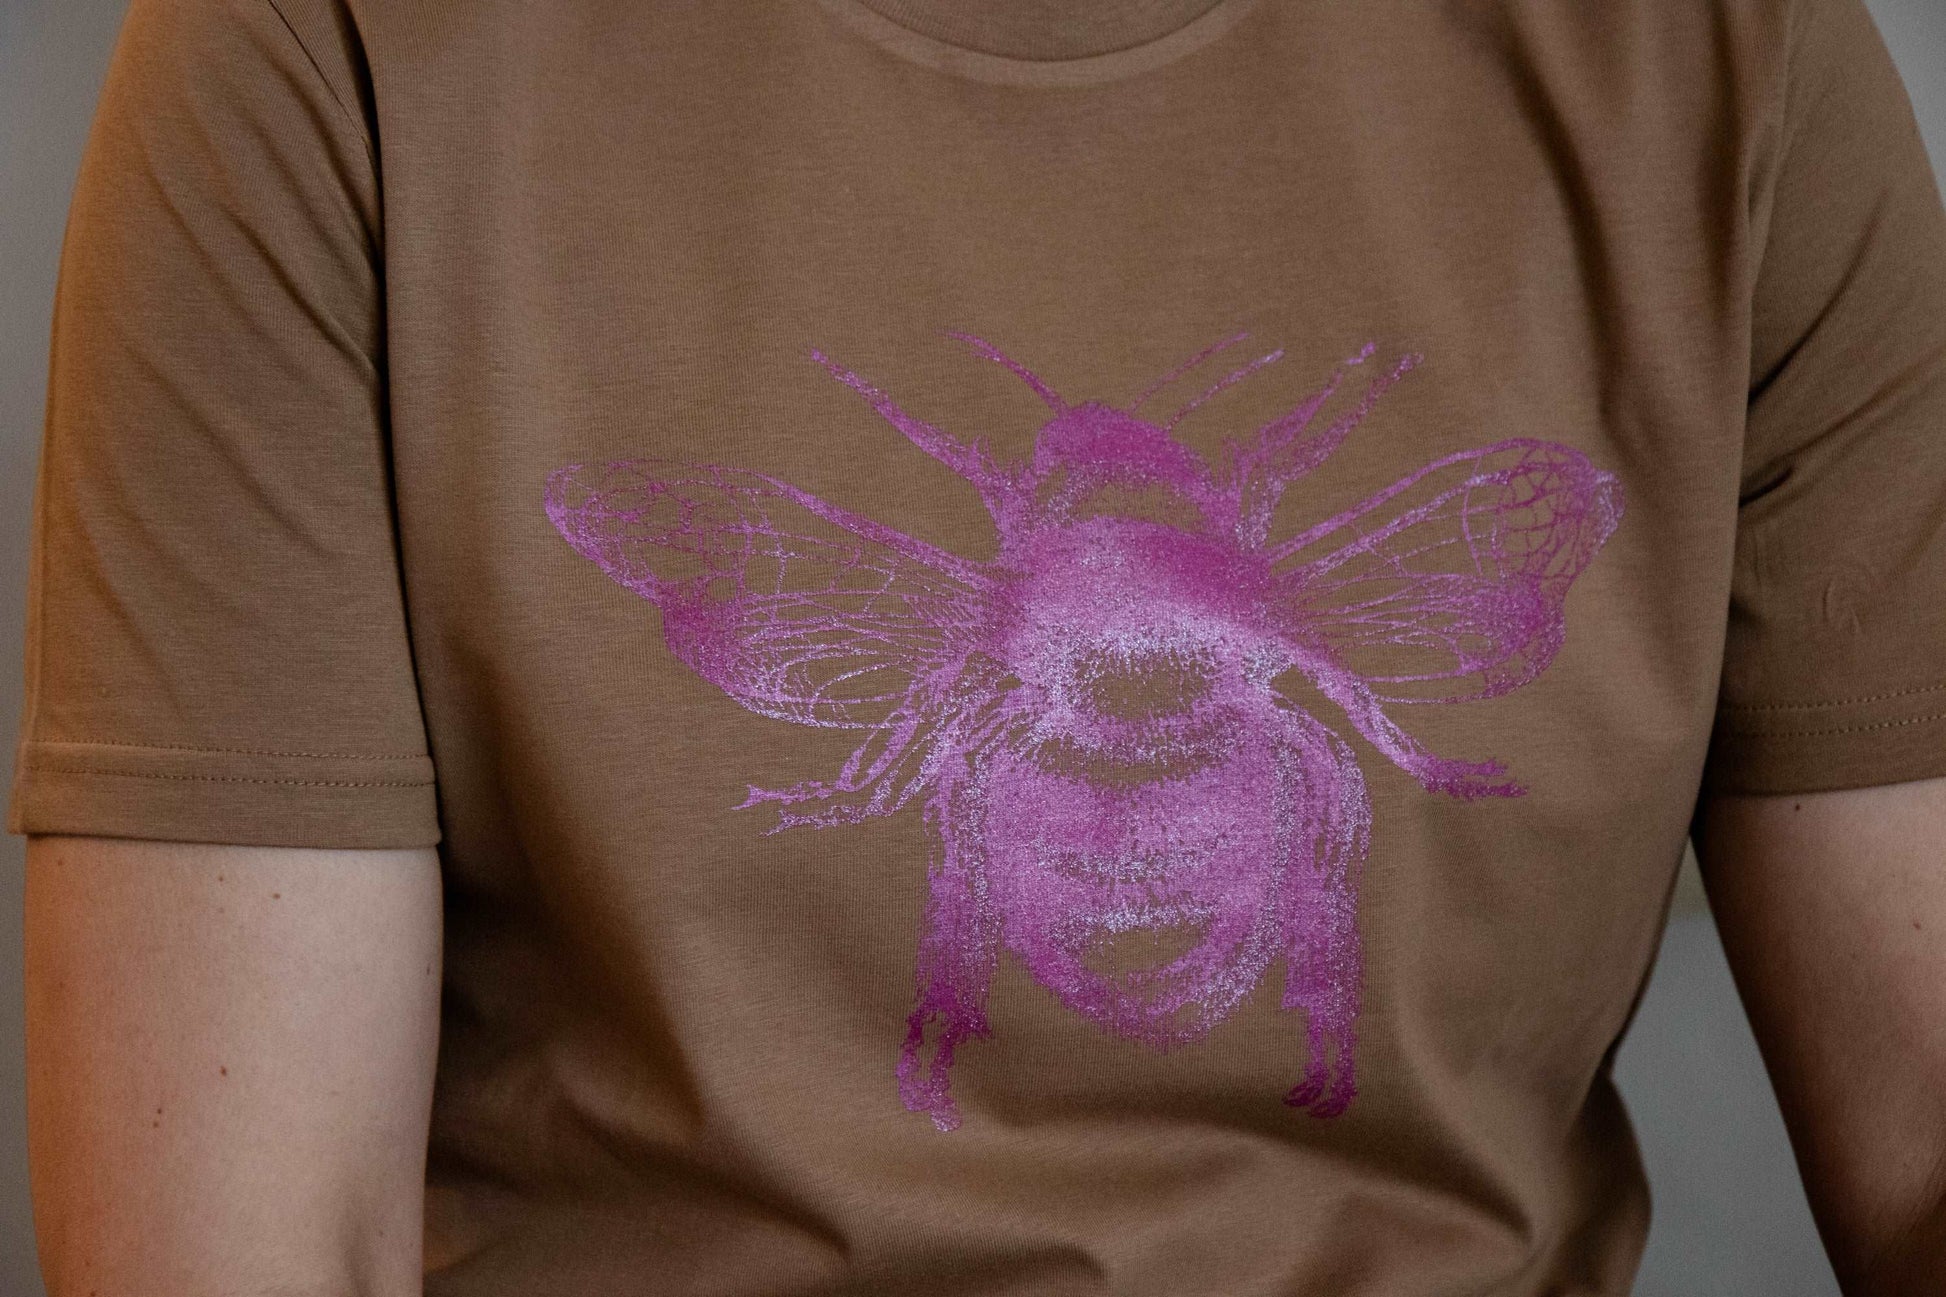 Caramel majica in dvojna čebela v pink barvi - unisex model / 100% organski bombaž